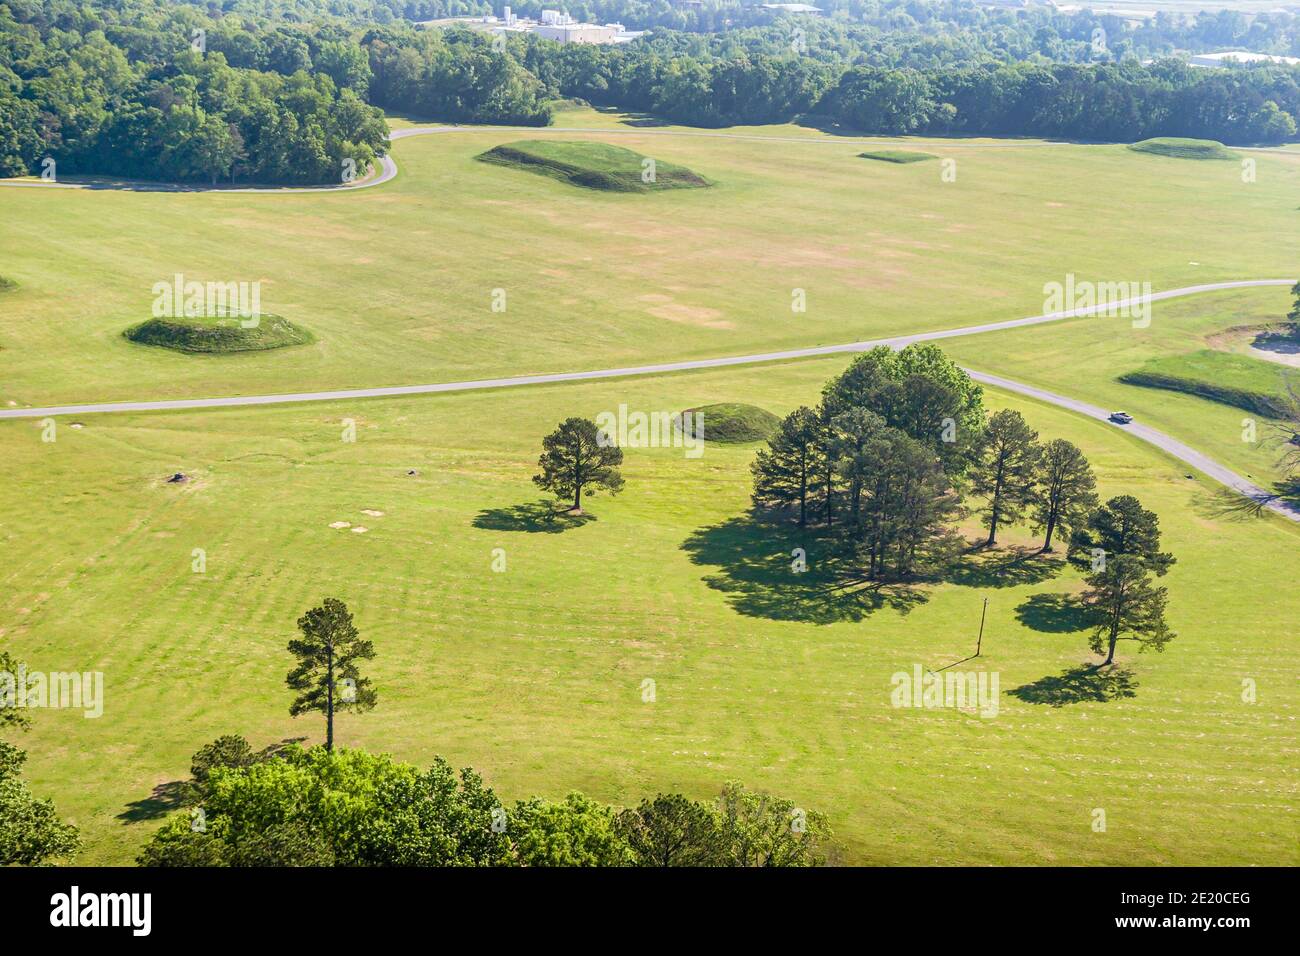 Site du parc archéologique de Moundville en Alabama, culture de l'époque du Mississippi du milieu Indien amérindien, musée du village historique, vue aérienne sur le dessus, pla Banque D'Images